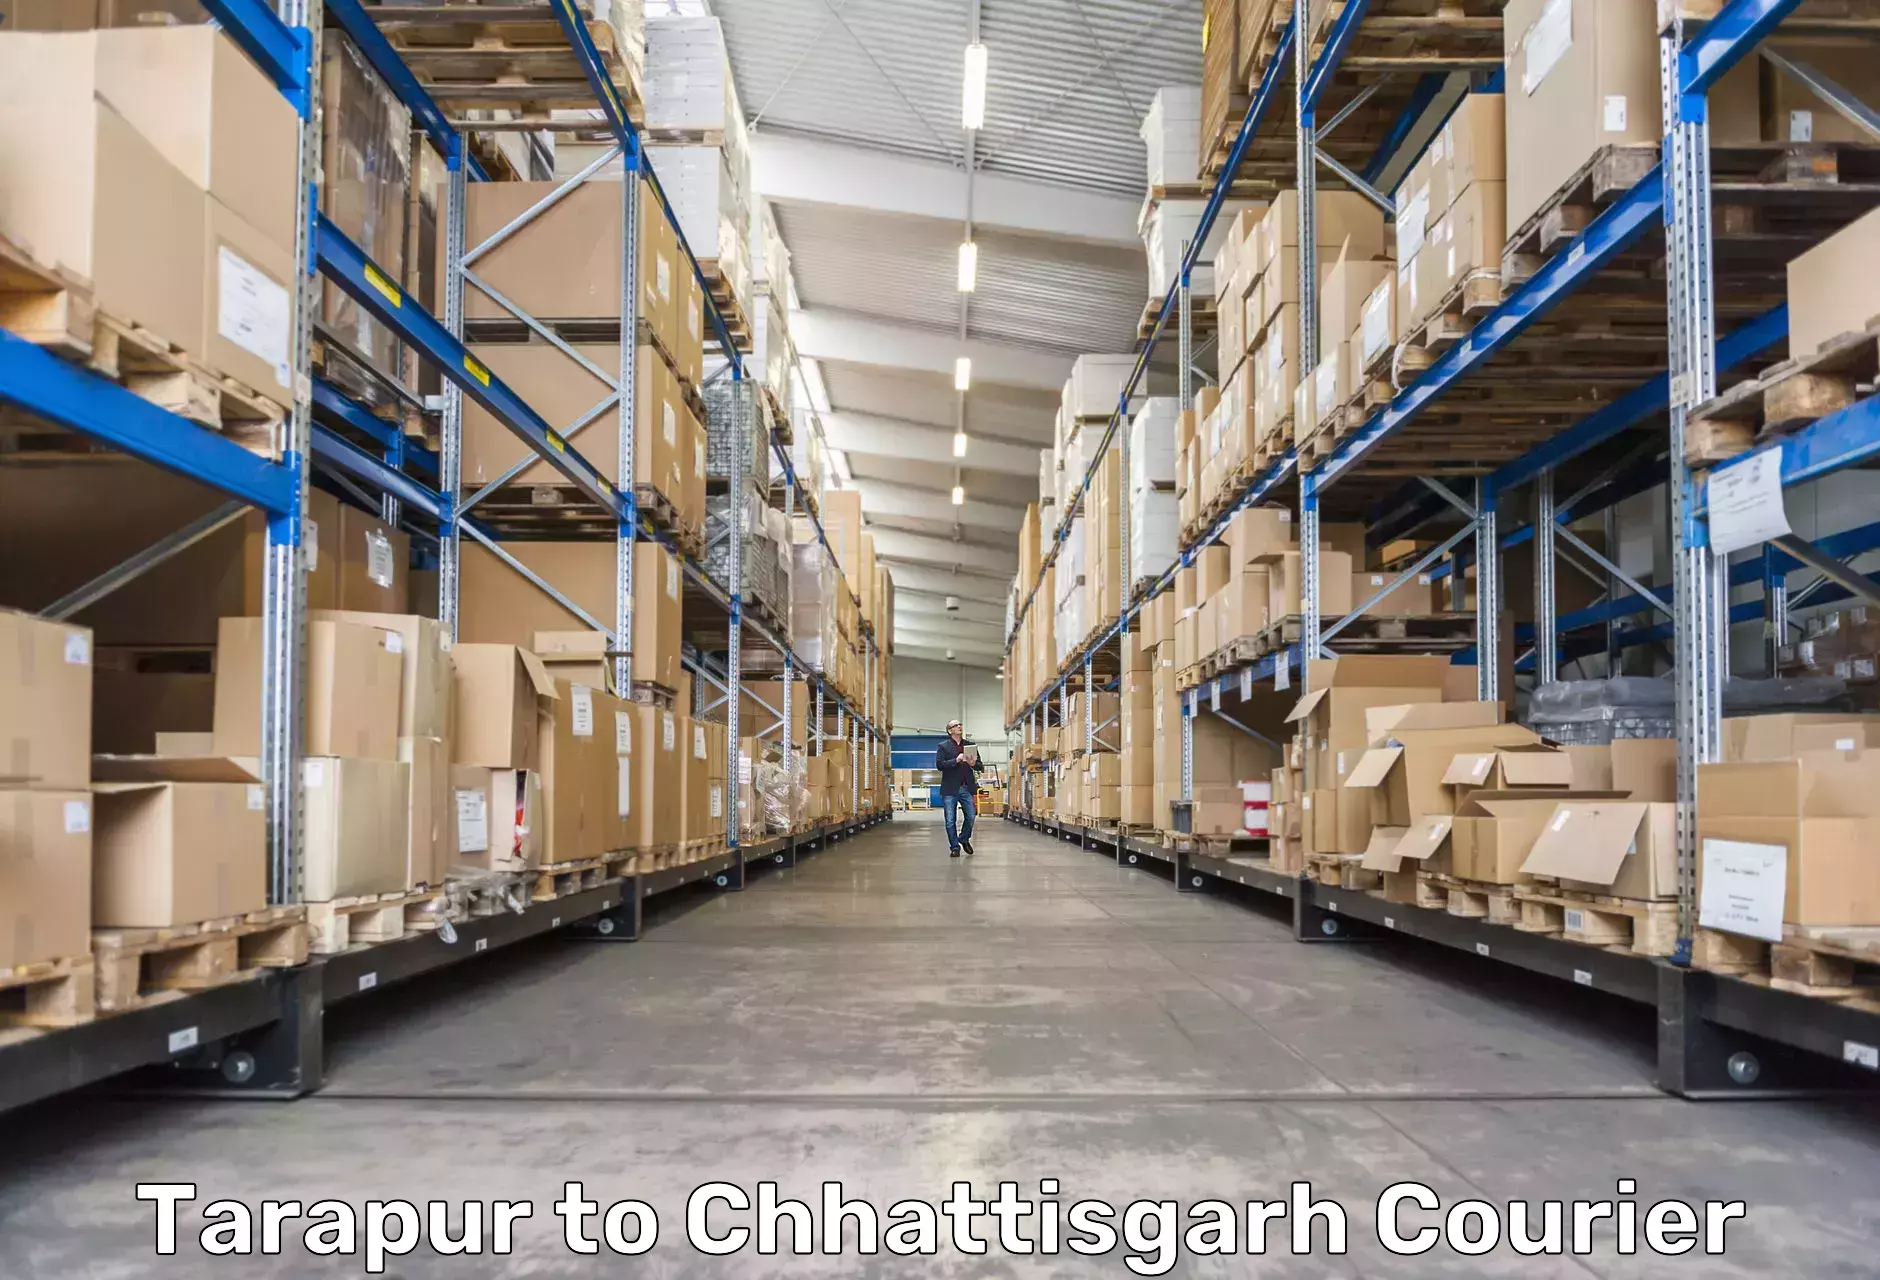 User-friendly delivery service Tarapur to Chhattisgarh